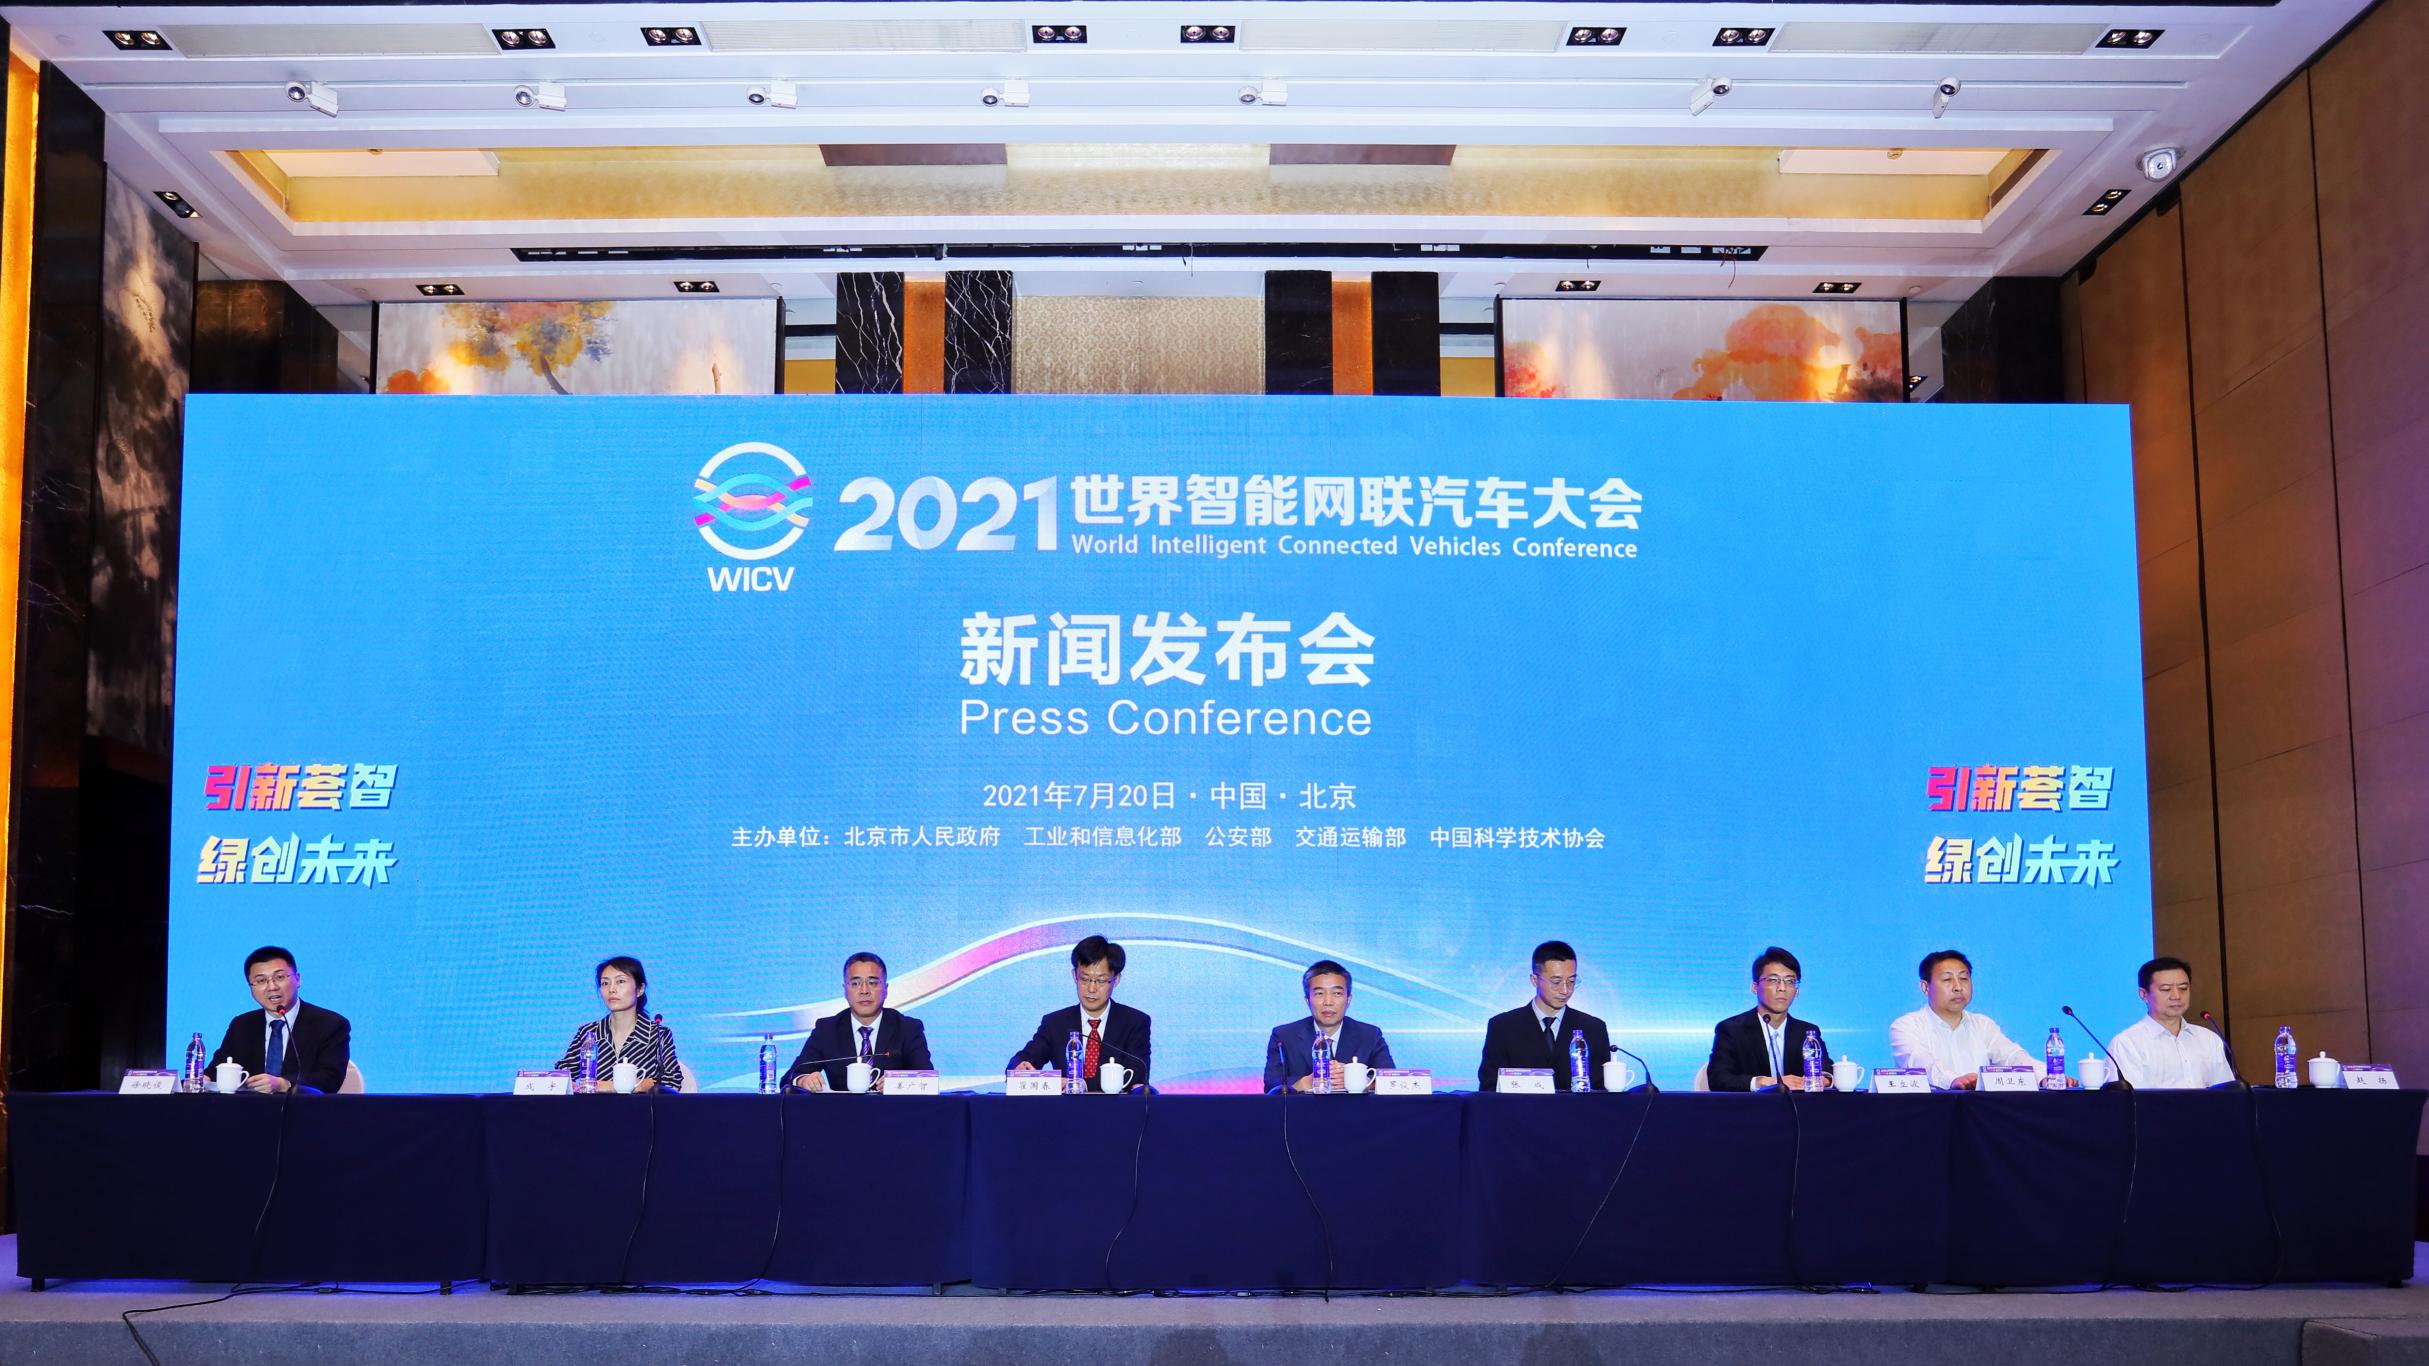 官宣丨2021世界智能网联汽车大会 将于9月25日至28日在京举办_世界智能网联汽车大会暨中国国际新能源和智能网联汽车展览会